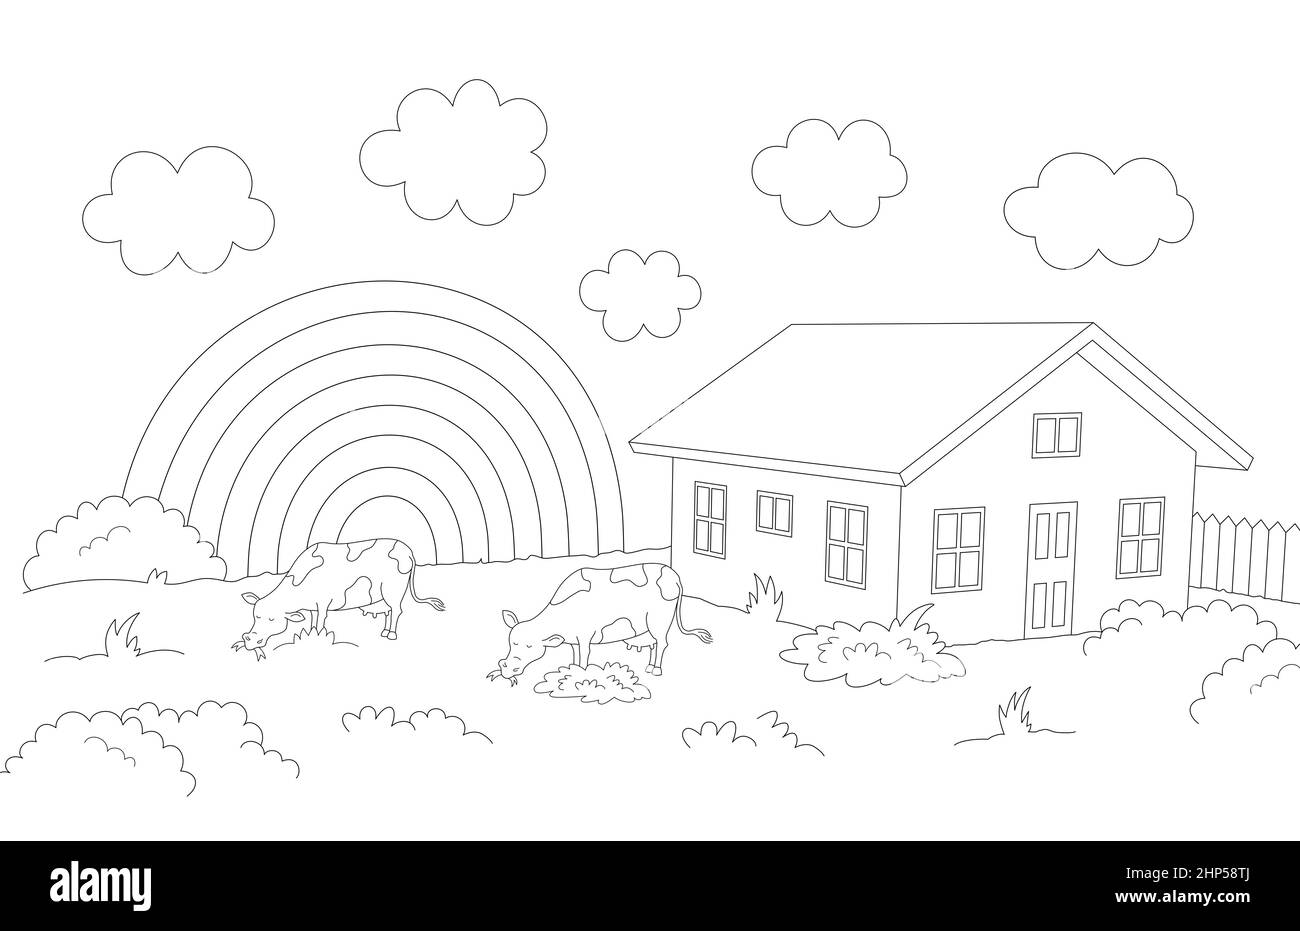 paysage rural avec des vaches mangeant de l'herbe et une maison, des nuages et un arc-en-ciel en arrière-plan, dessin 3d vue perspective Banque D'Images